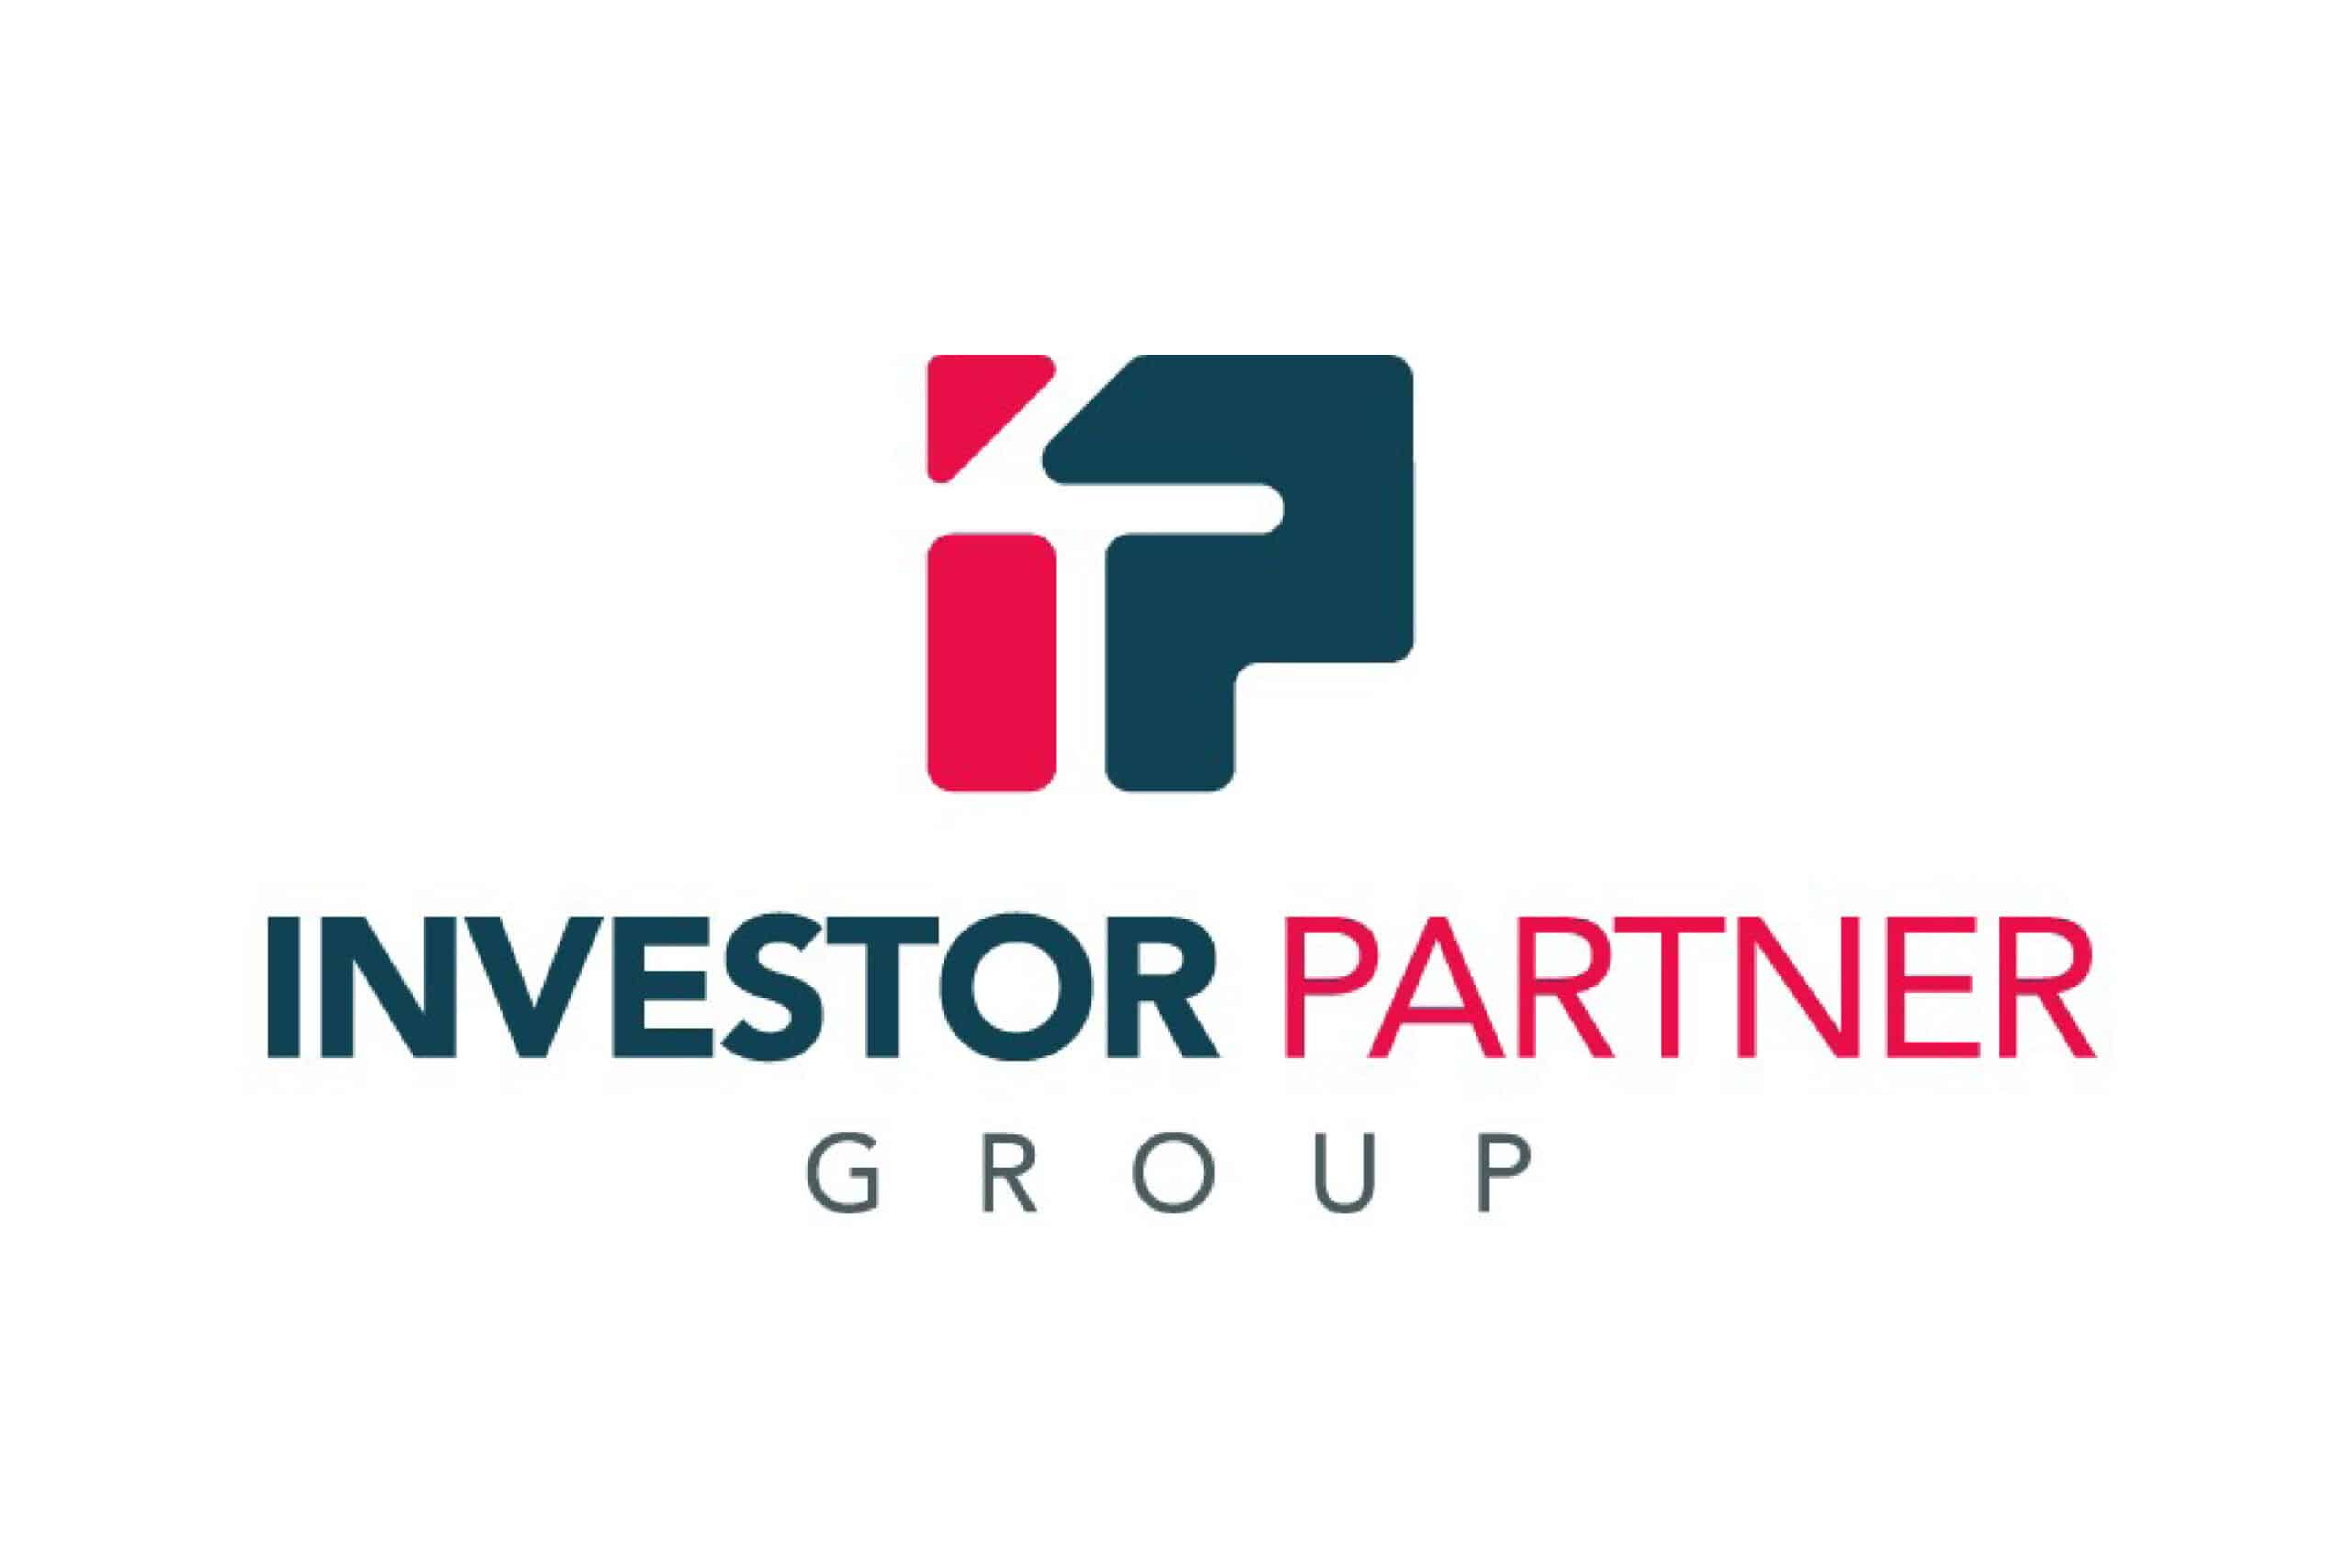 Investor Partner Group